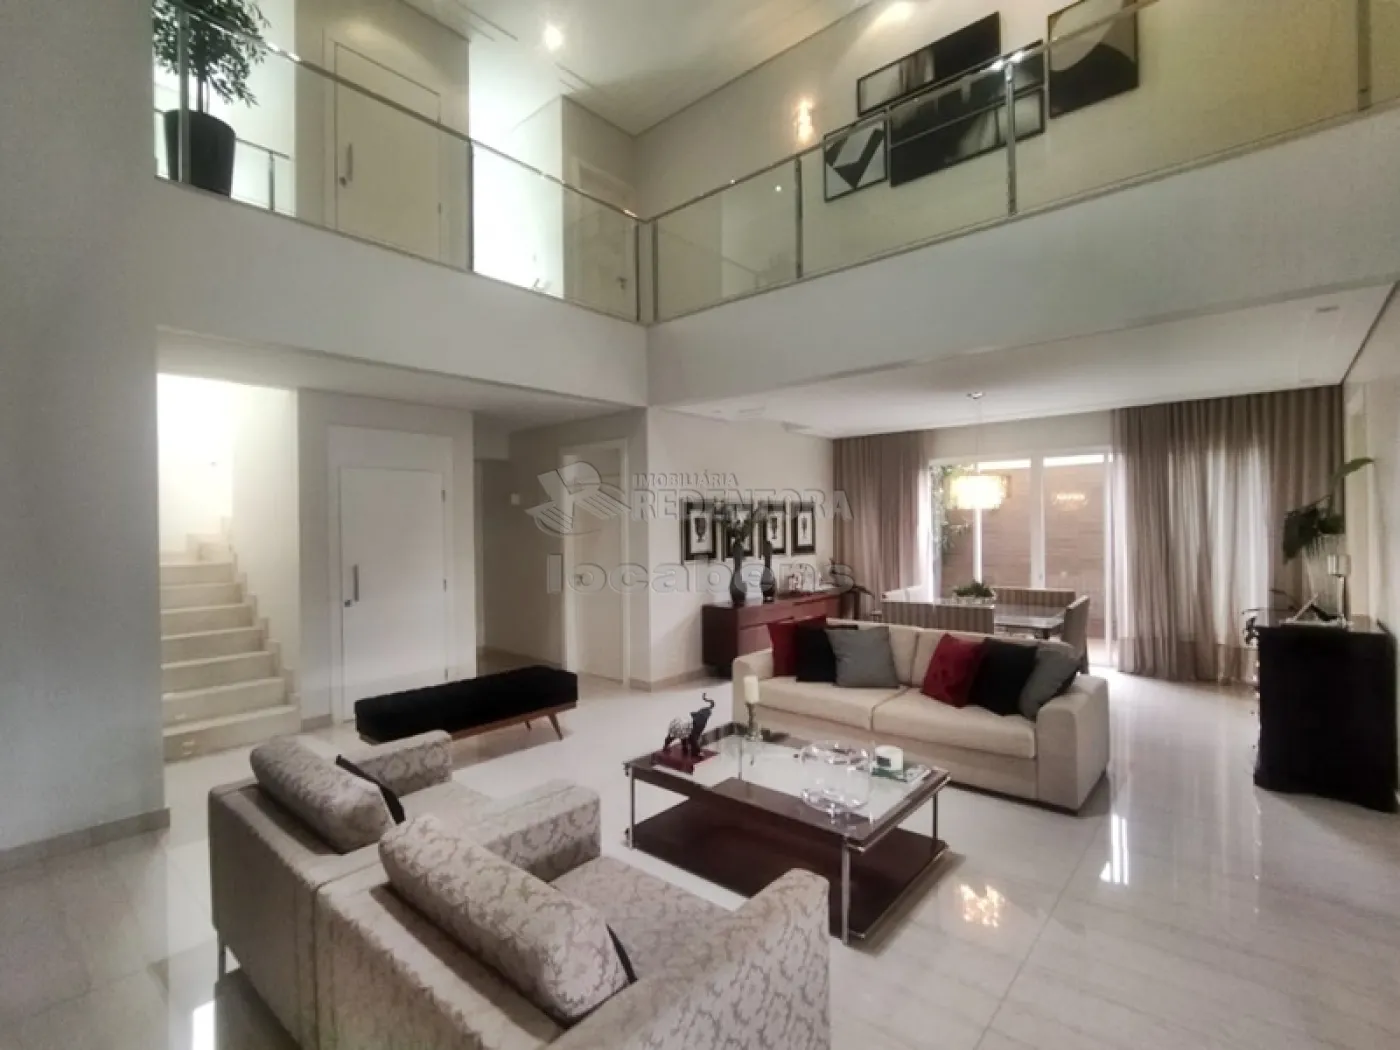 Comprar Casa / Condomínio em Mirassol apenas R$ 2.300.000,00 - Foto 6